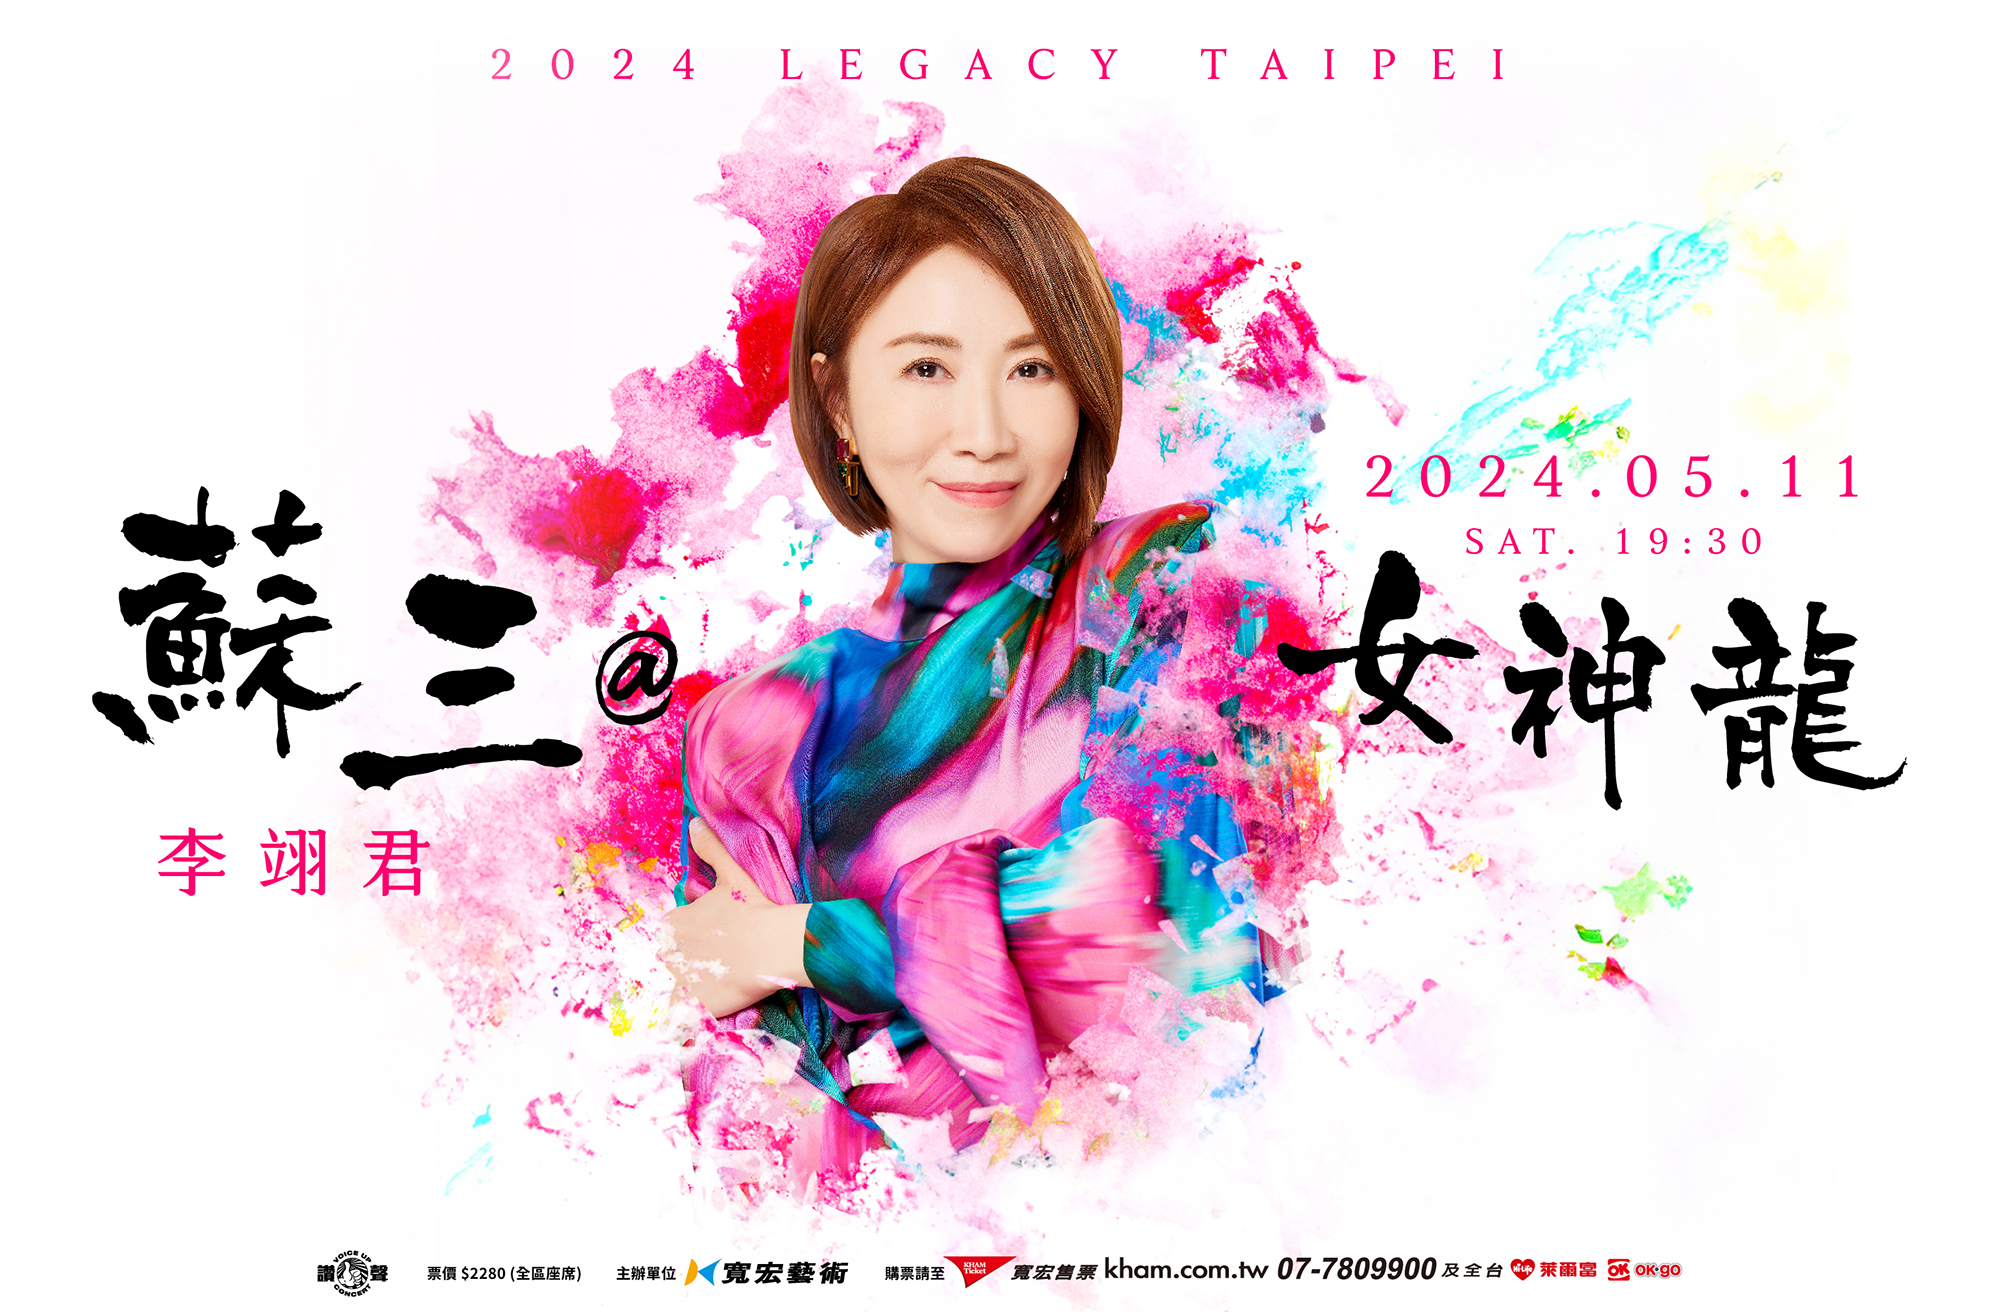 「情歌傳唱天后」李翊君將在Legacy Taipei獻上「蘇三@女神龍」演唱會